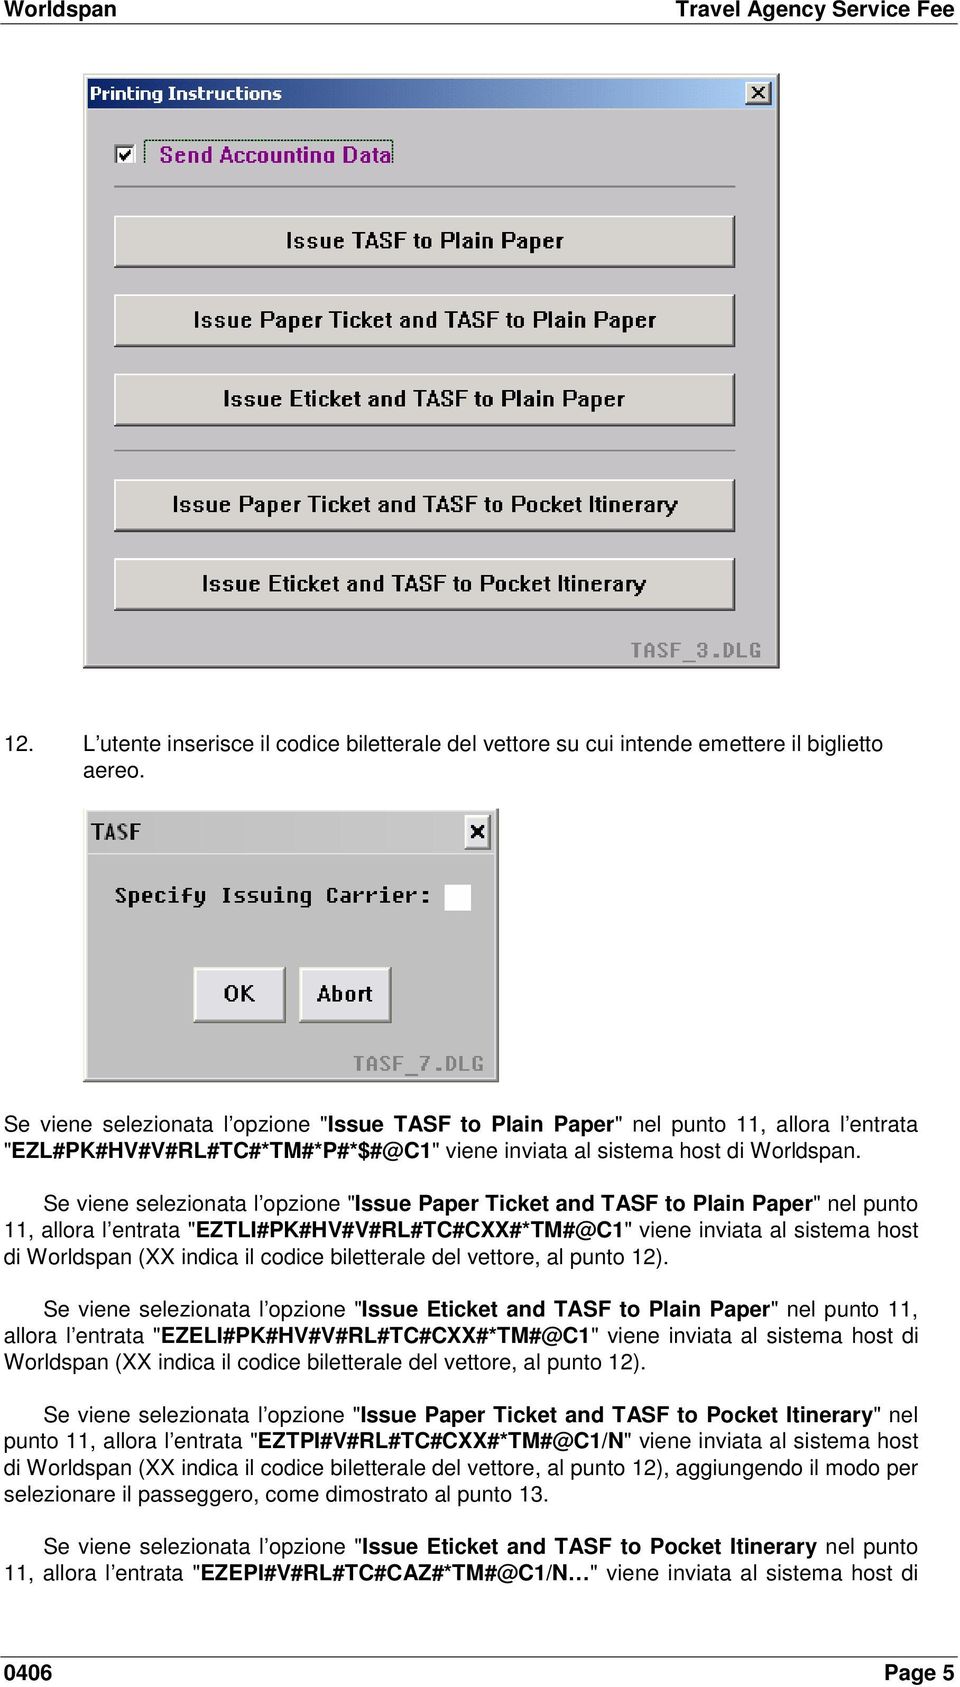 Se viene selezionata l opzione "Issue Paper Ticket and TASF to Plain Paper" nel punto 11, allora l entrata "EZTLI#PK#HV#V#RL#TC#CXX#*TM#@C1" viene inviata al sistema host di Worldspan (XX indica il